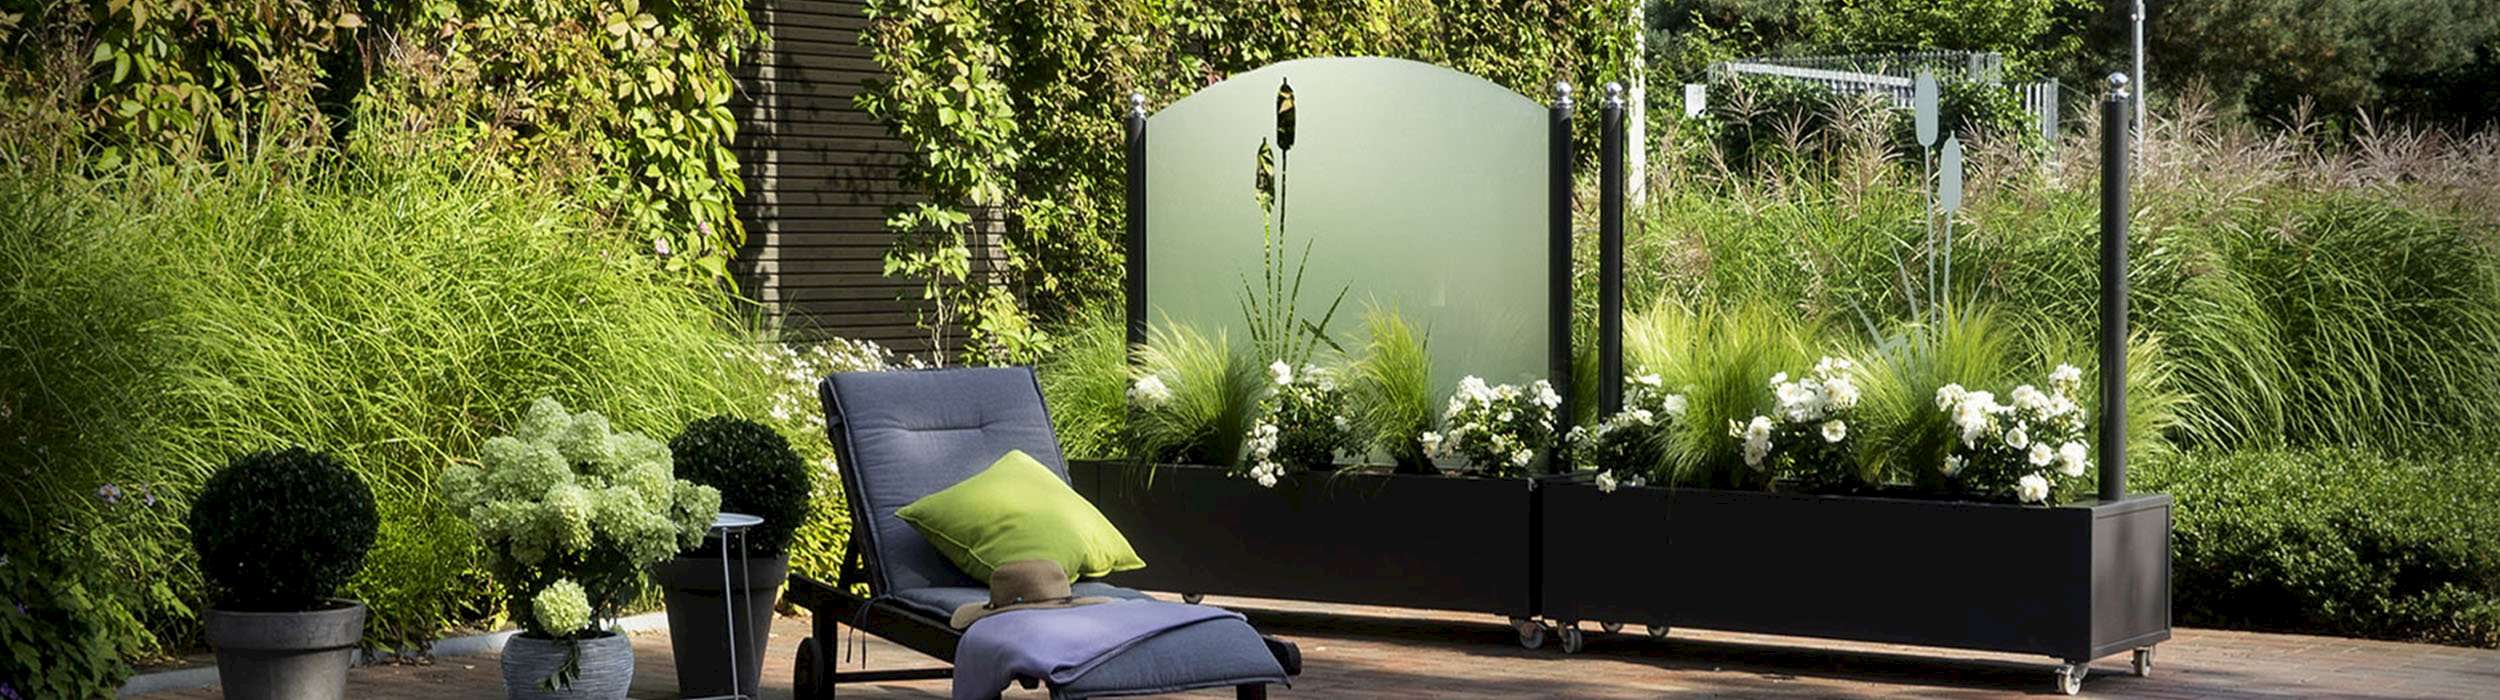 Terrasse mit Windschutz aus Glas, Pflanzen und einer Liege